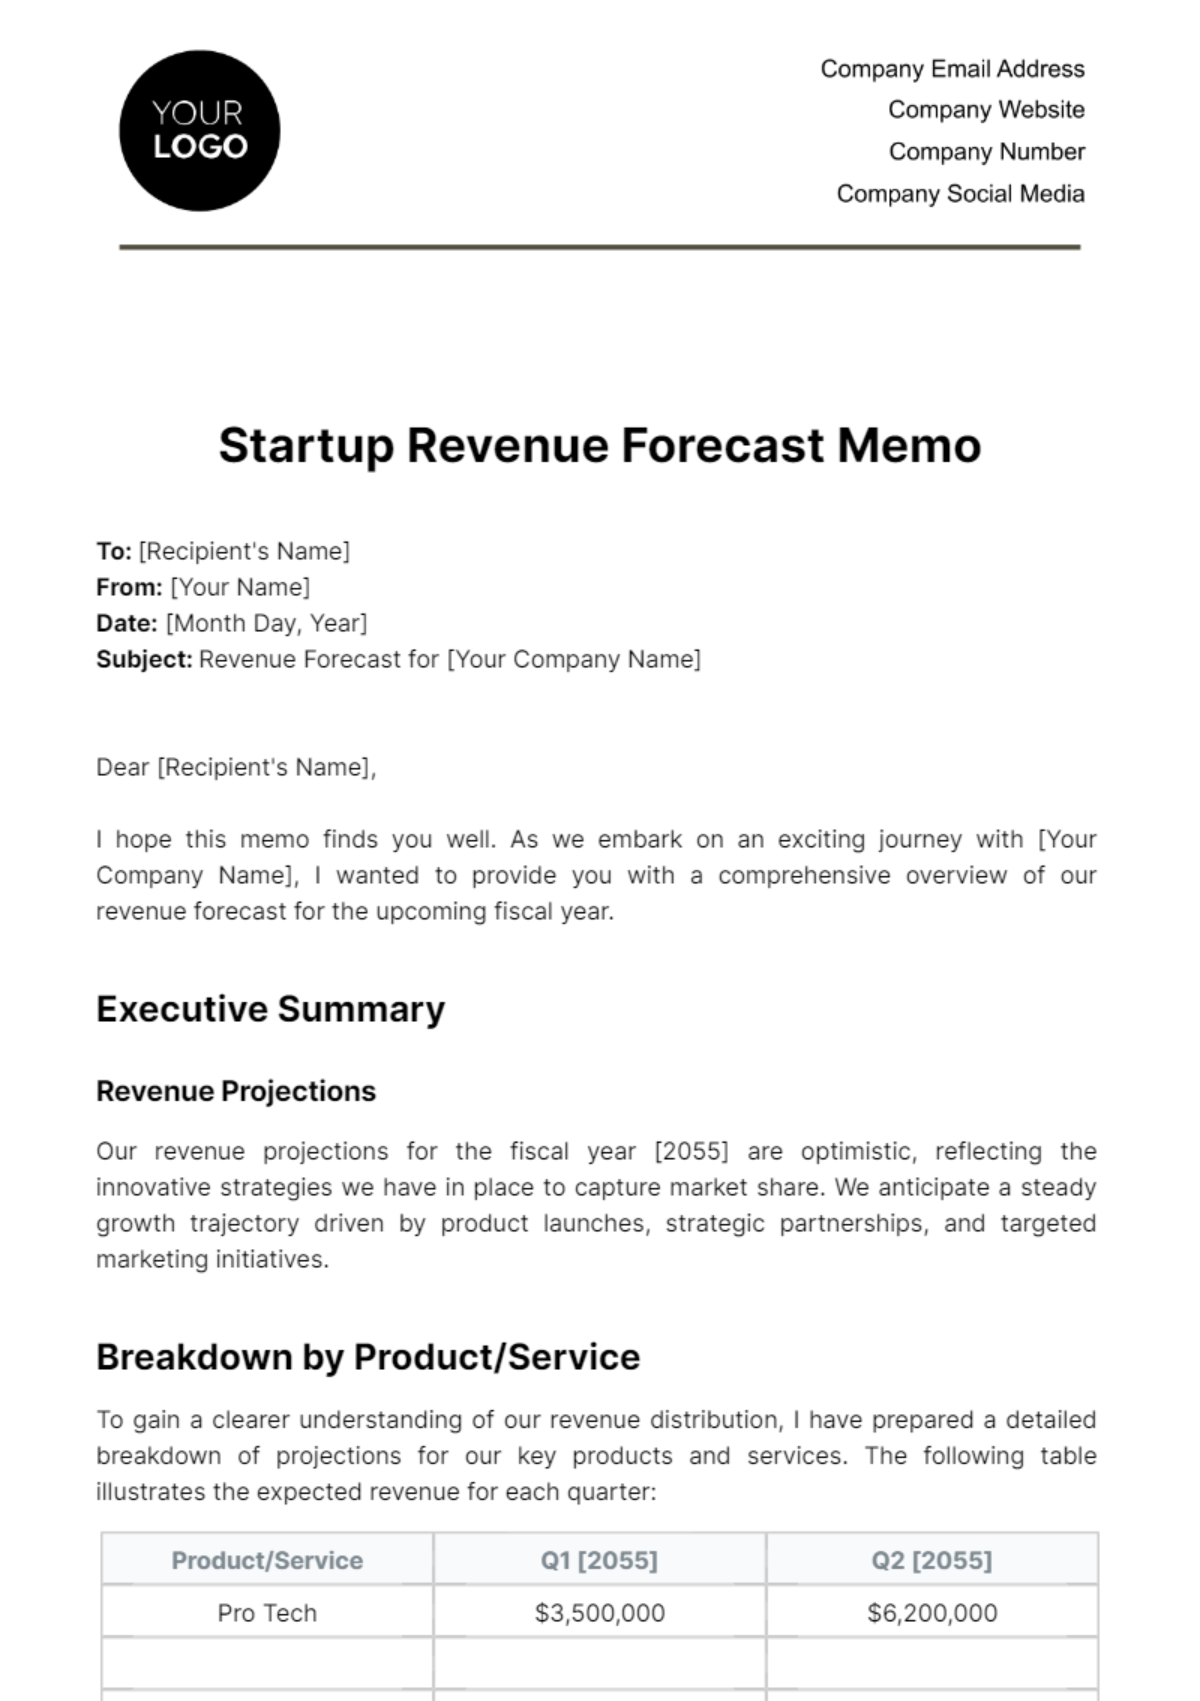 Free Startup Revenue Forecast Memo Template